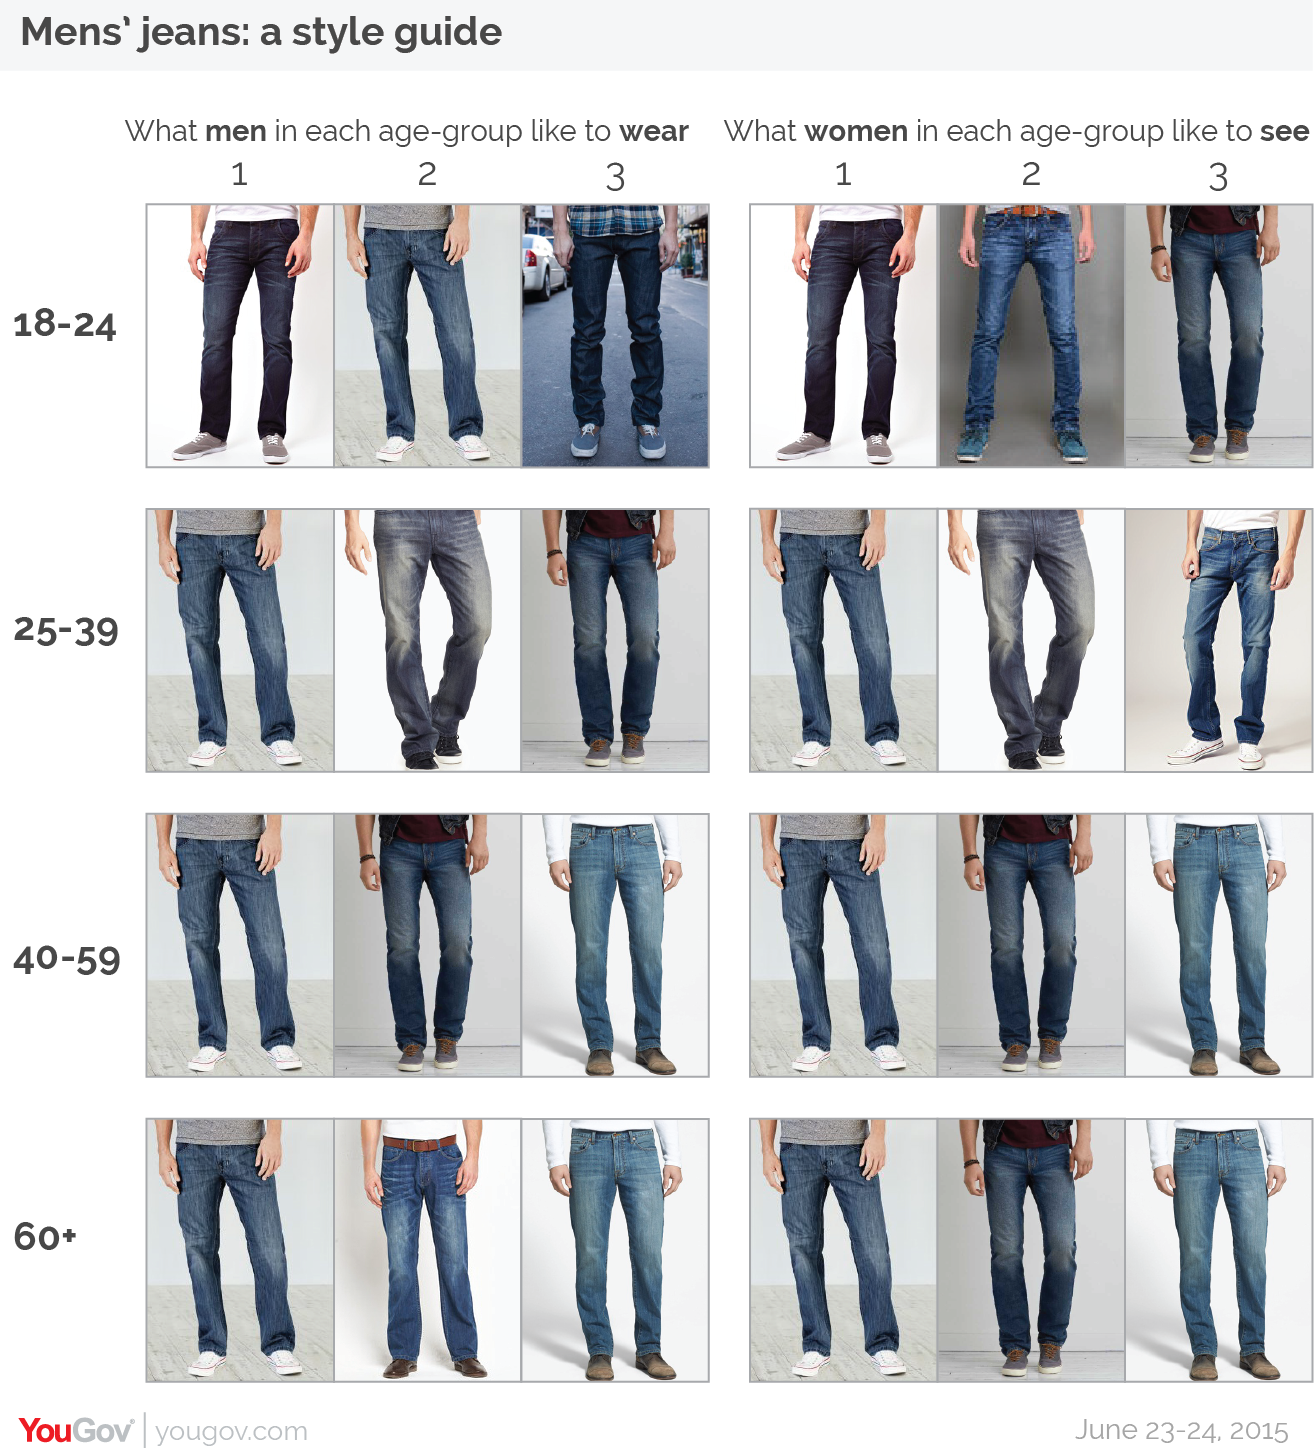 Джинсы скинни (92 фото) (skinny jeans), что это такое и с чем носить